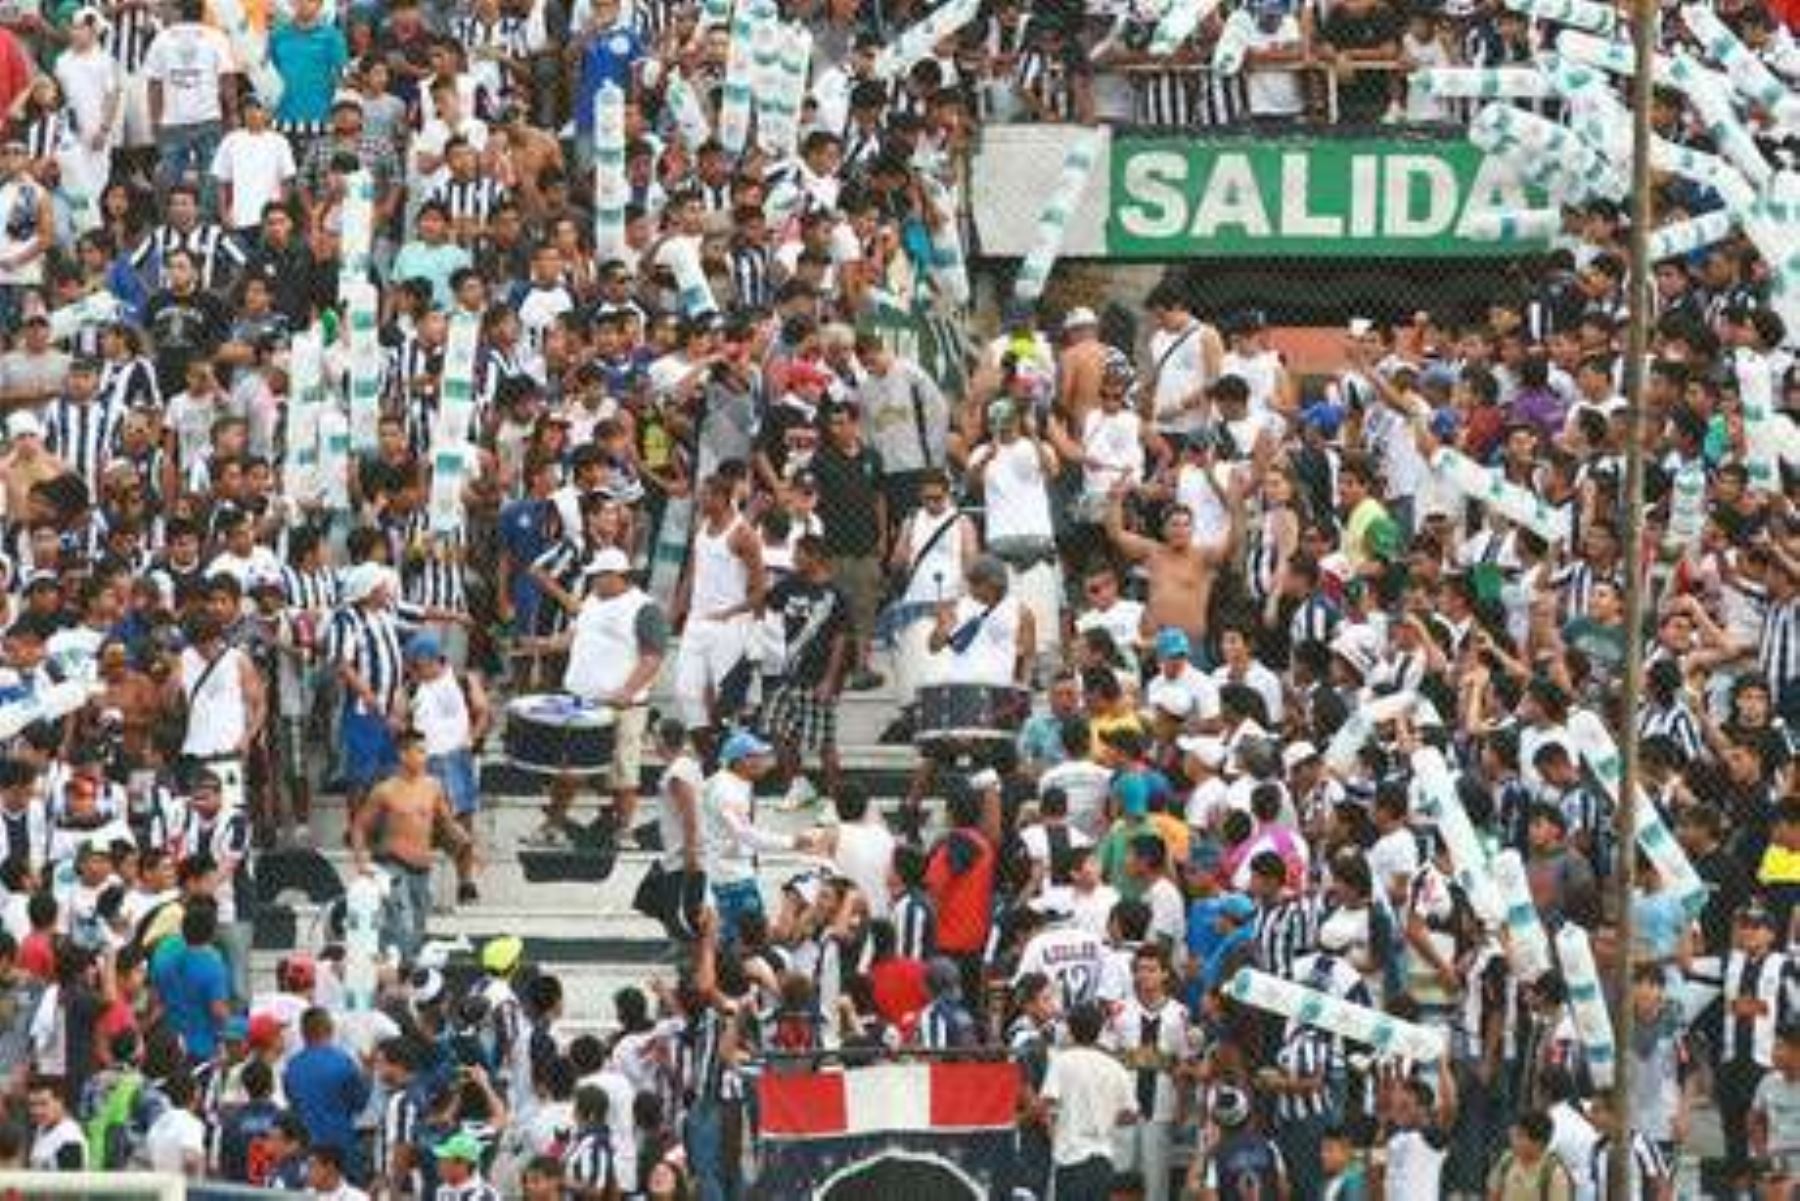 Prohíben caras pintadas, banderolas e instrumentos musicales en estadios. Foto: Internet/Medios